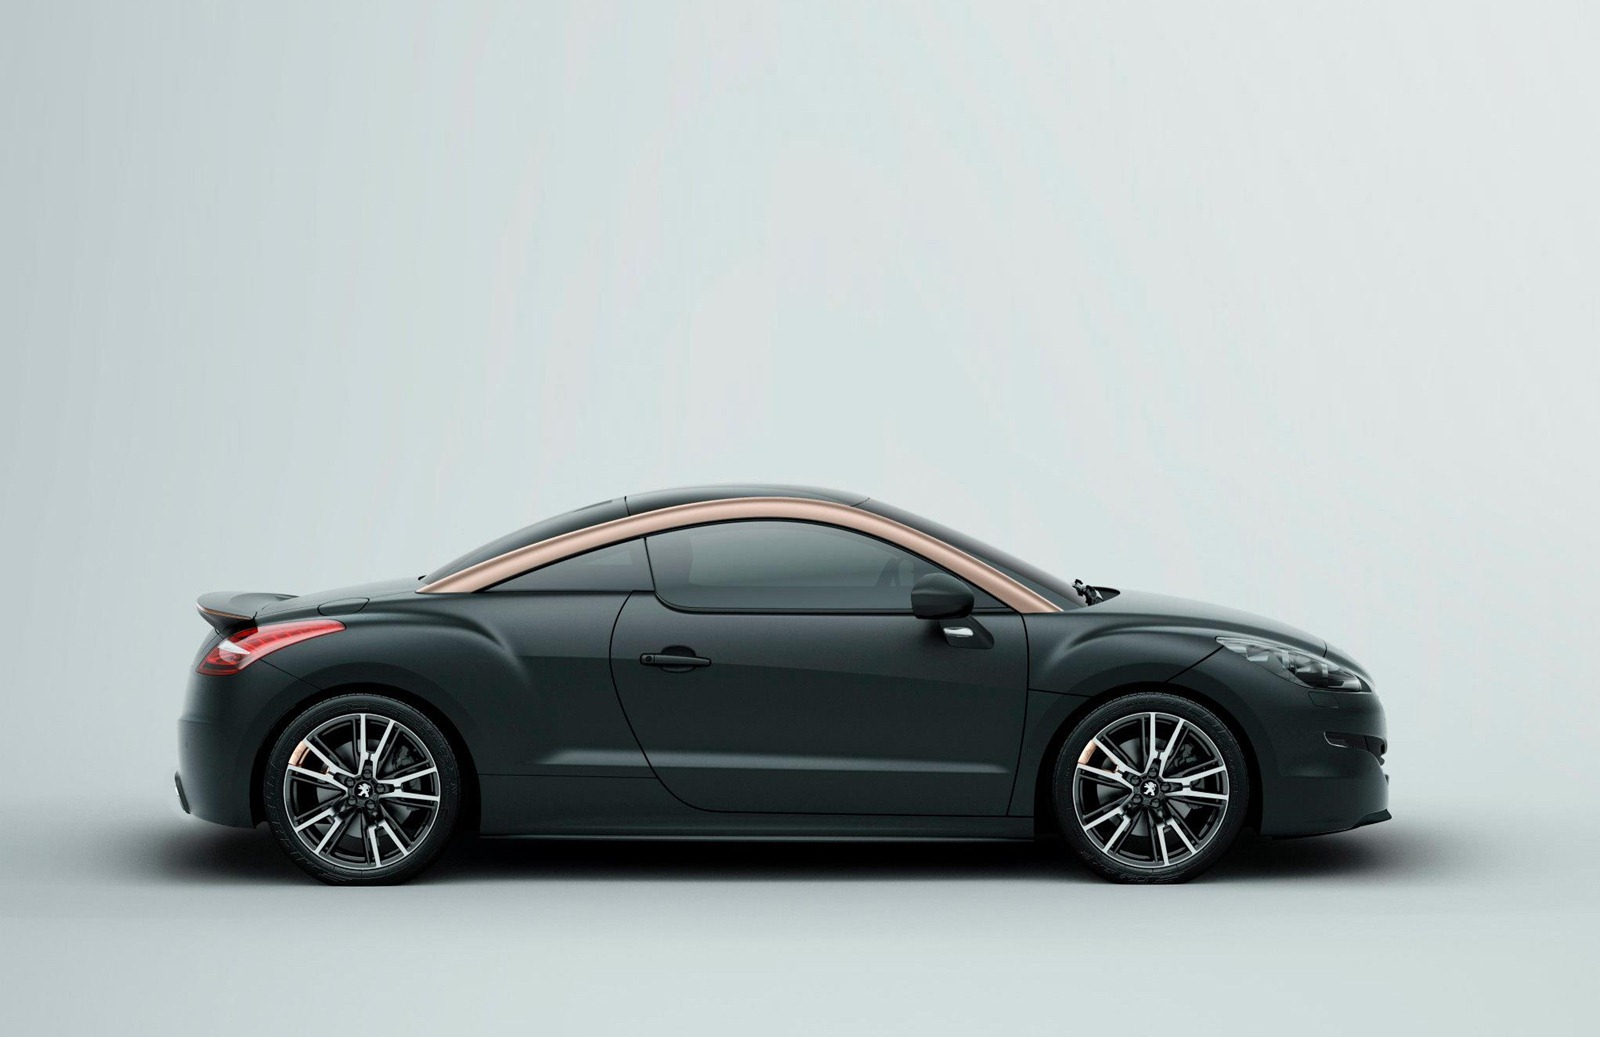 http://3.bp.blogspot.com/-q48ahuoCsFw/UFDhrP9vTlI/AAAAAAAAV7o/5dIMH998SAI/s1600/2013-Peugeot-RCZ-R-Concept-4.jpg